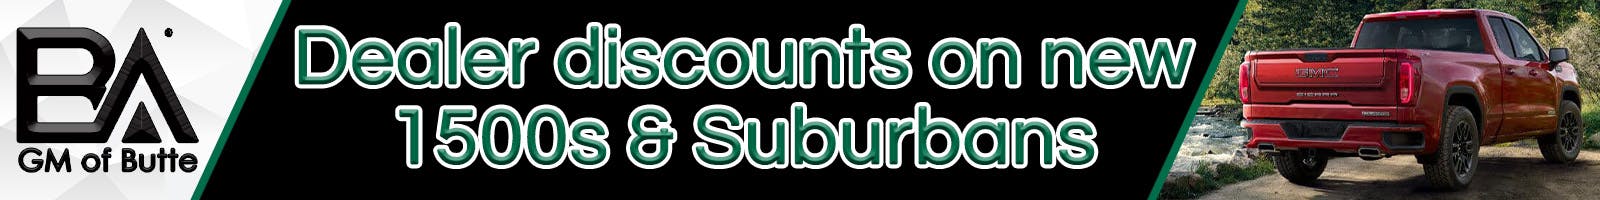 Dealer discounts on new 1500s & Suburbans | Butte Auto Group